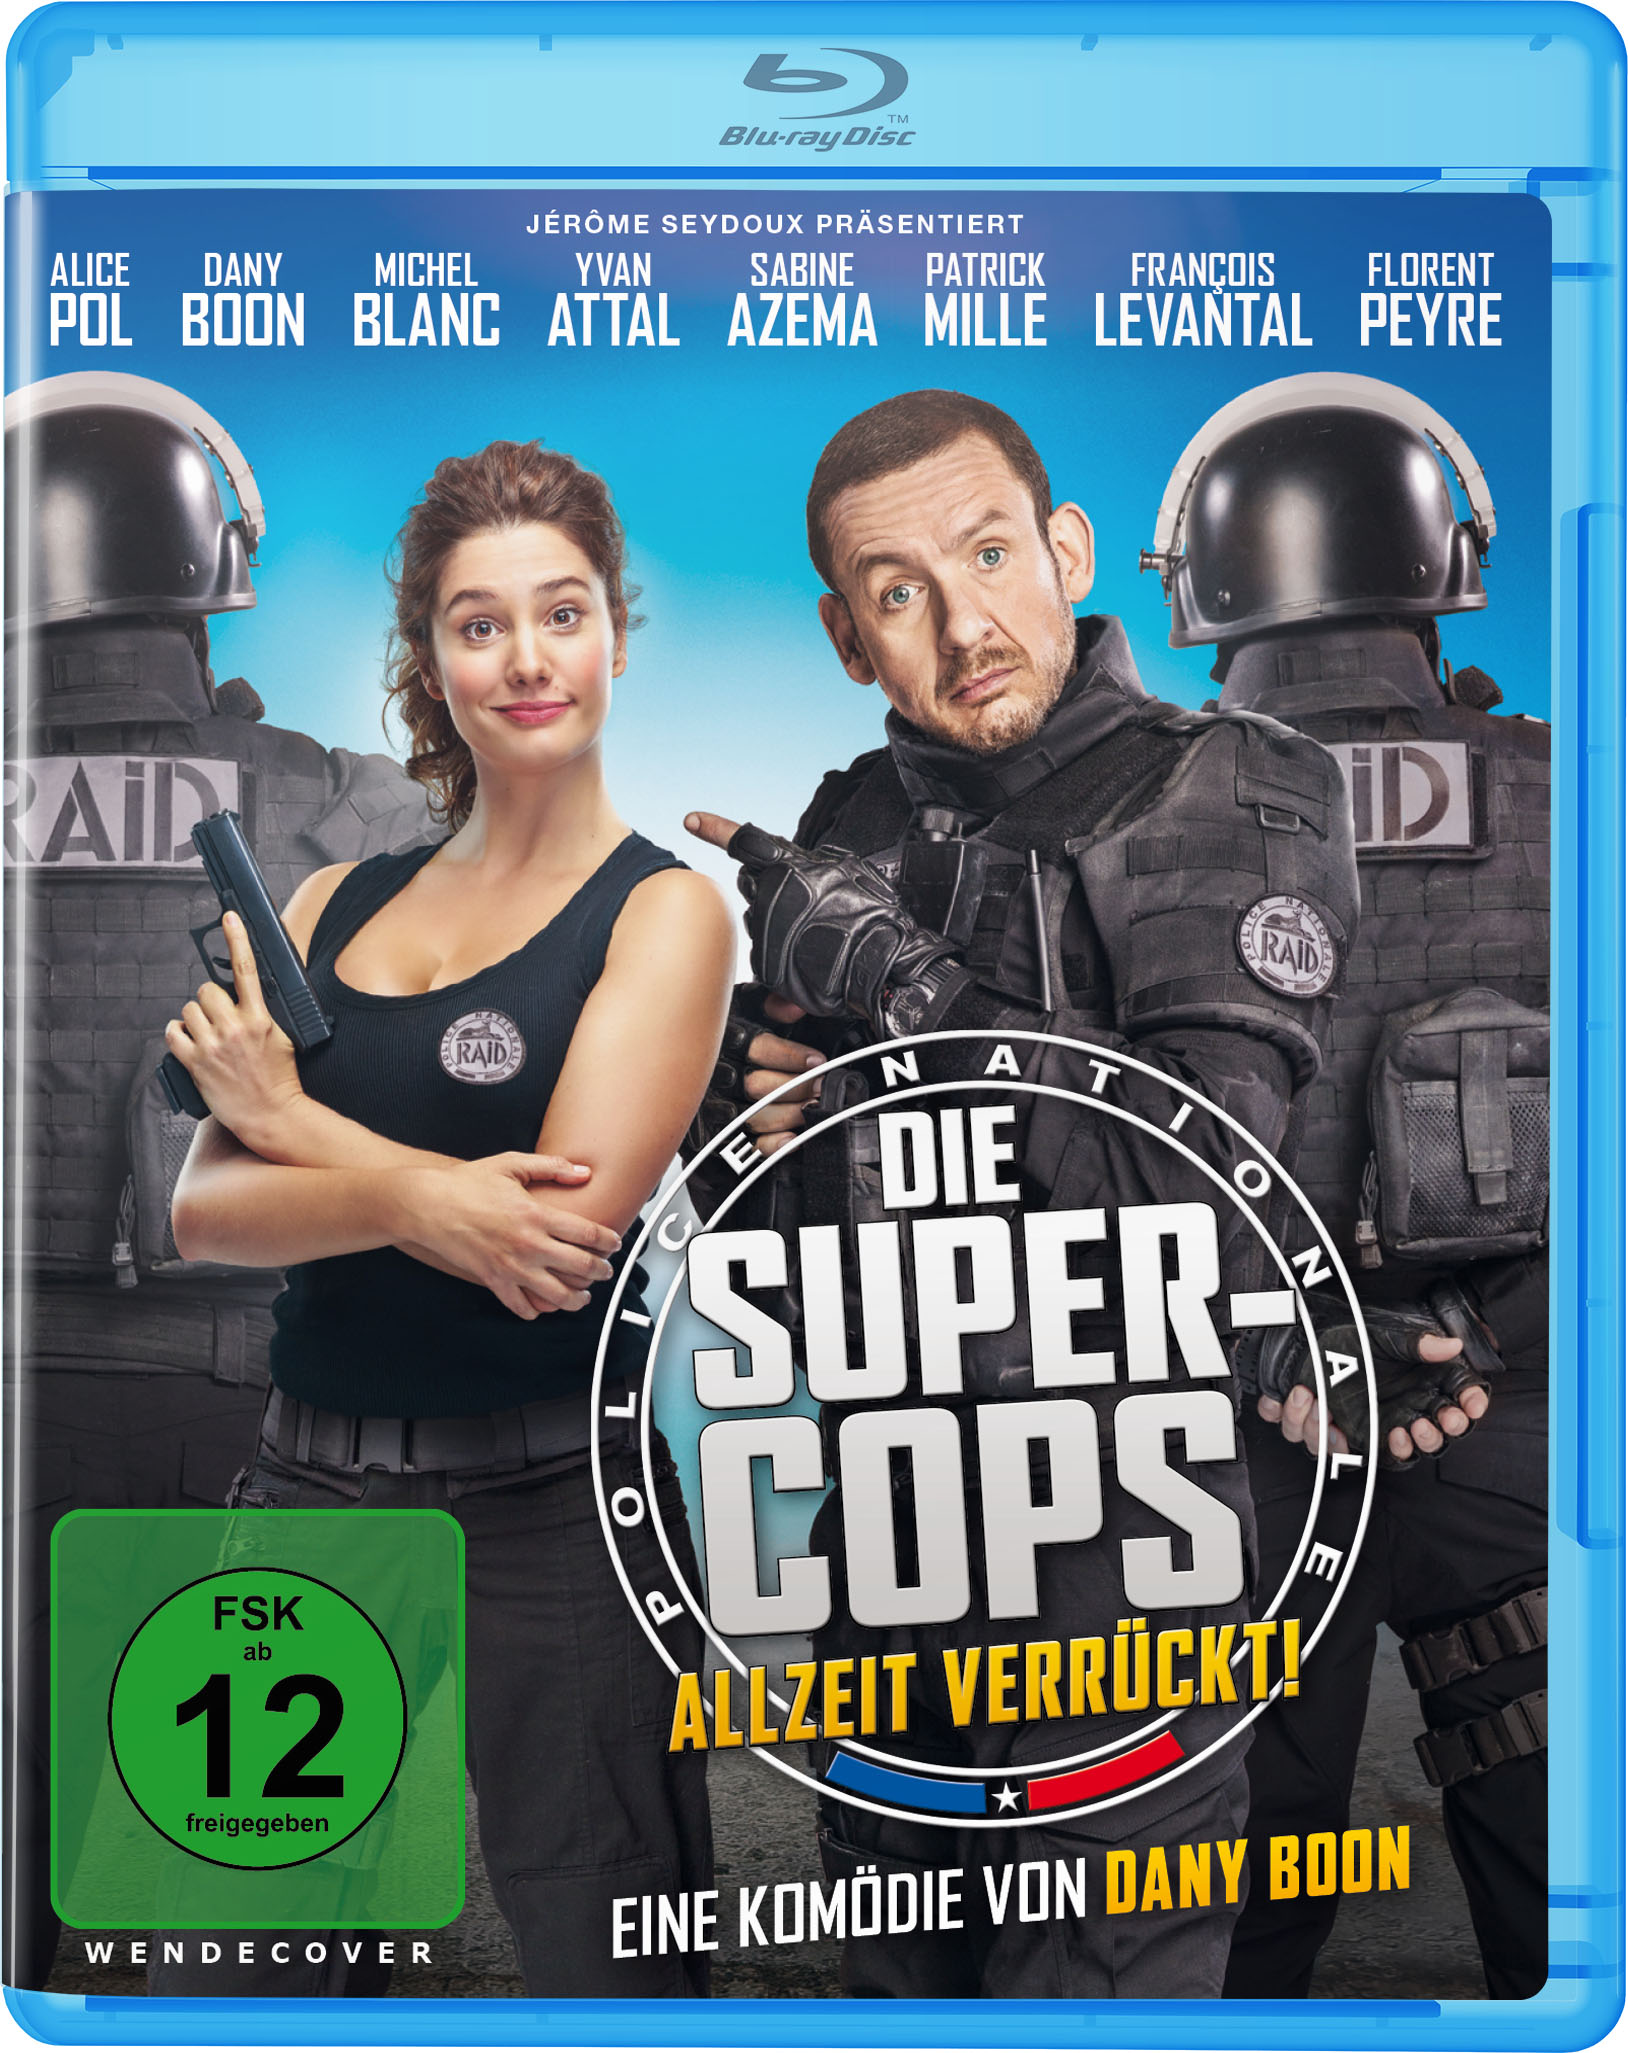 Allzeit Blu-ray Die Verrückt! Super-Cops -